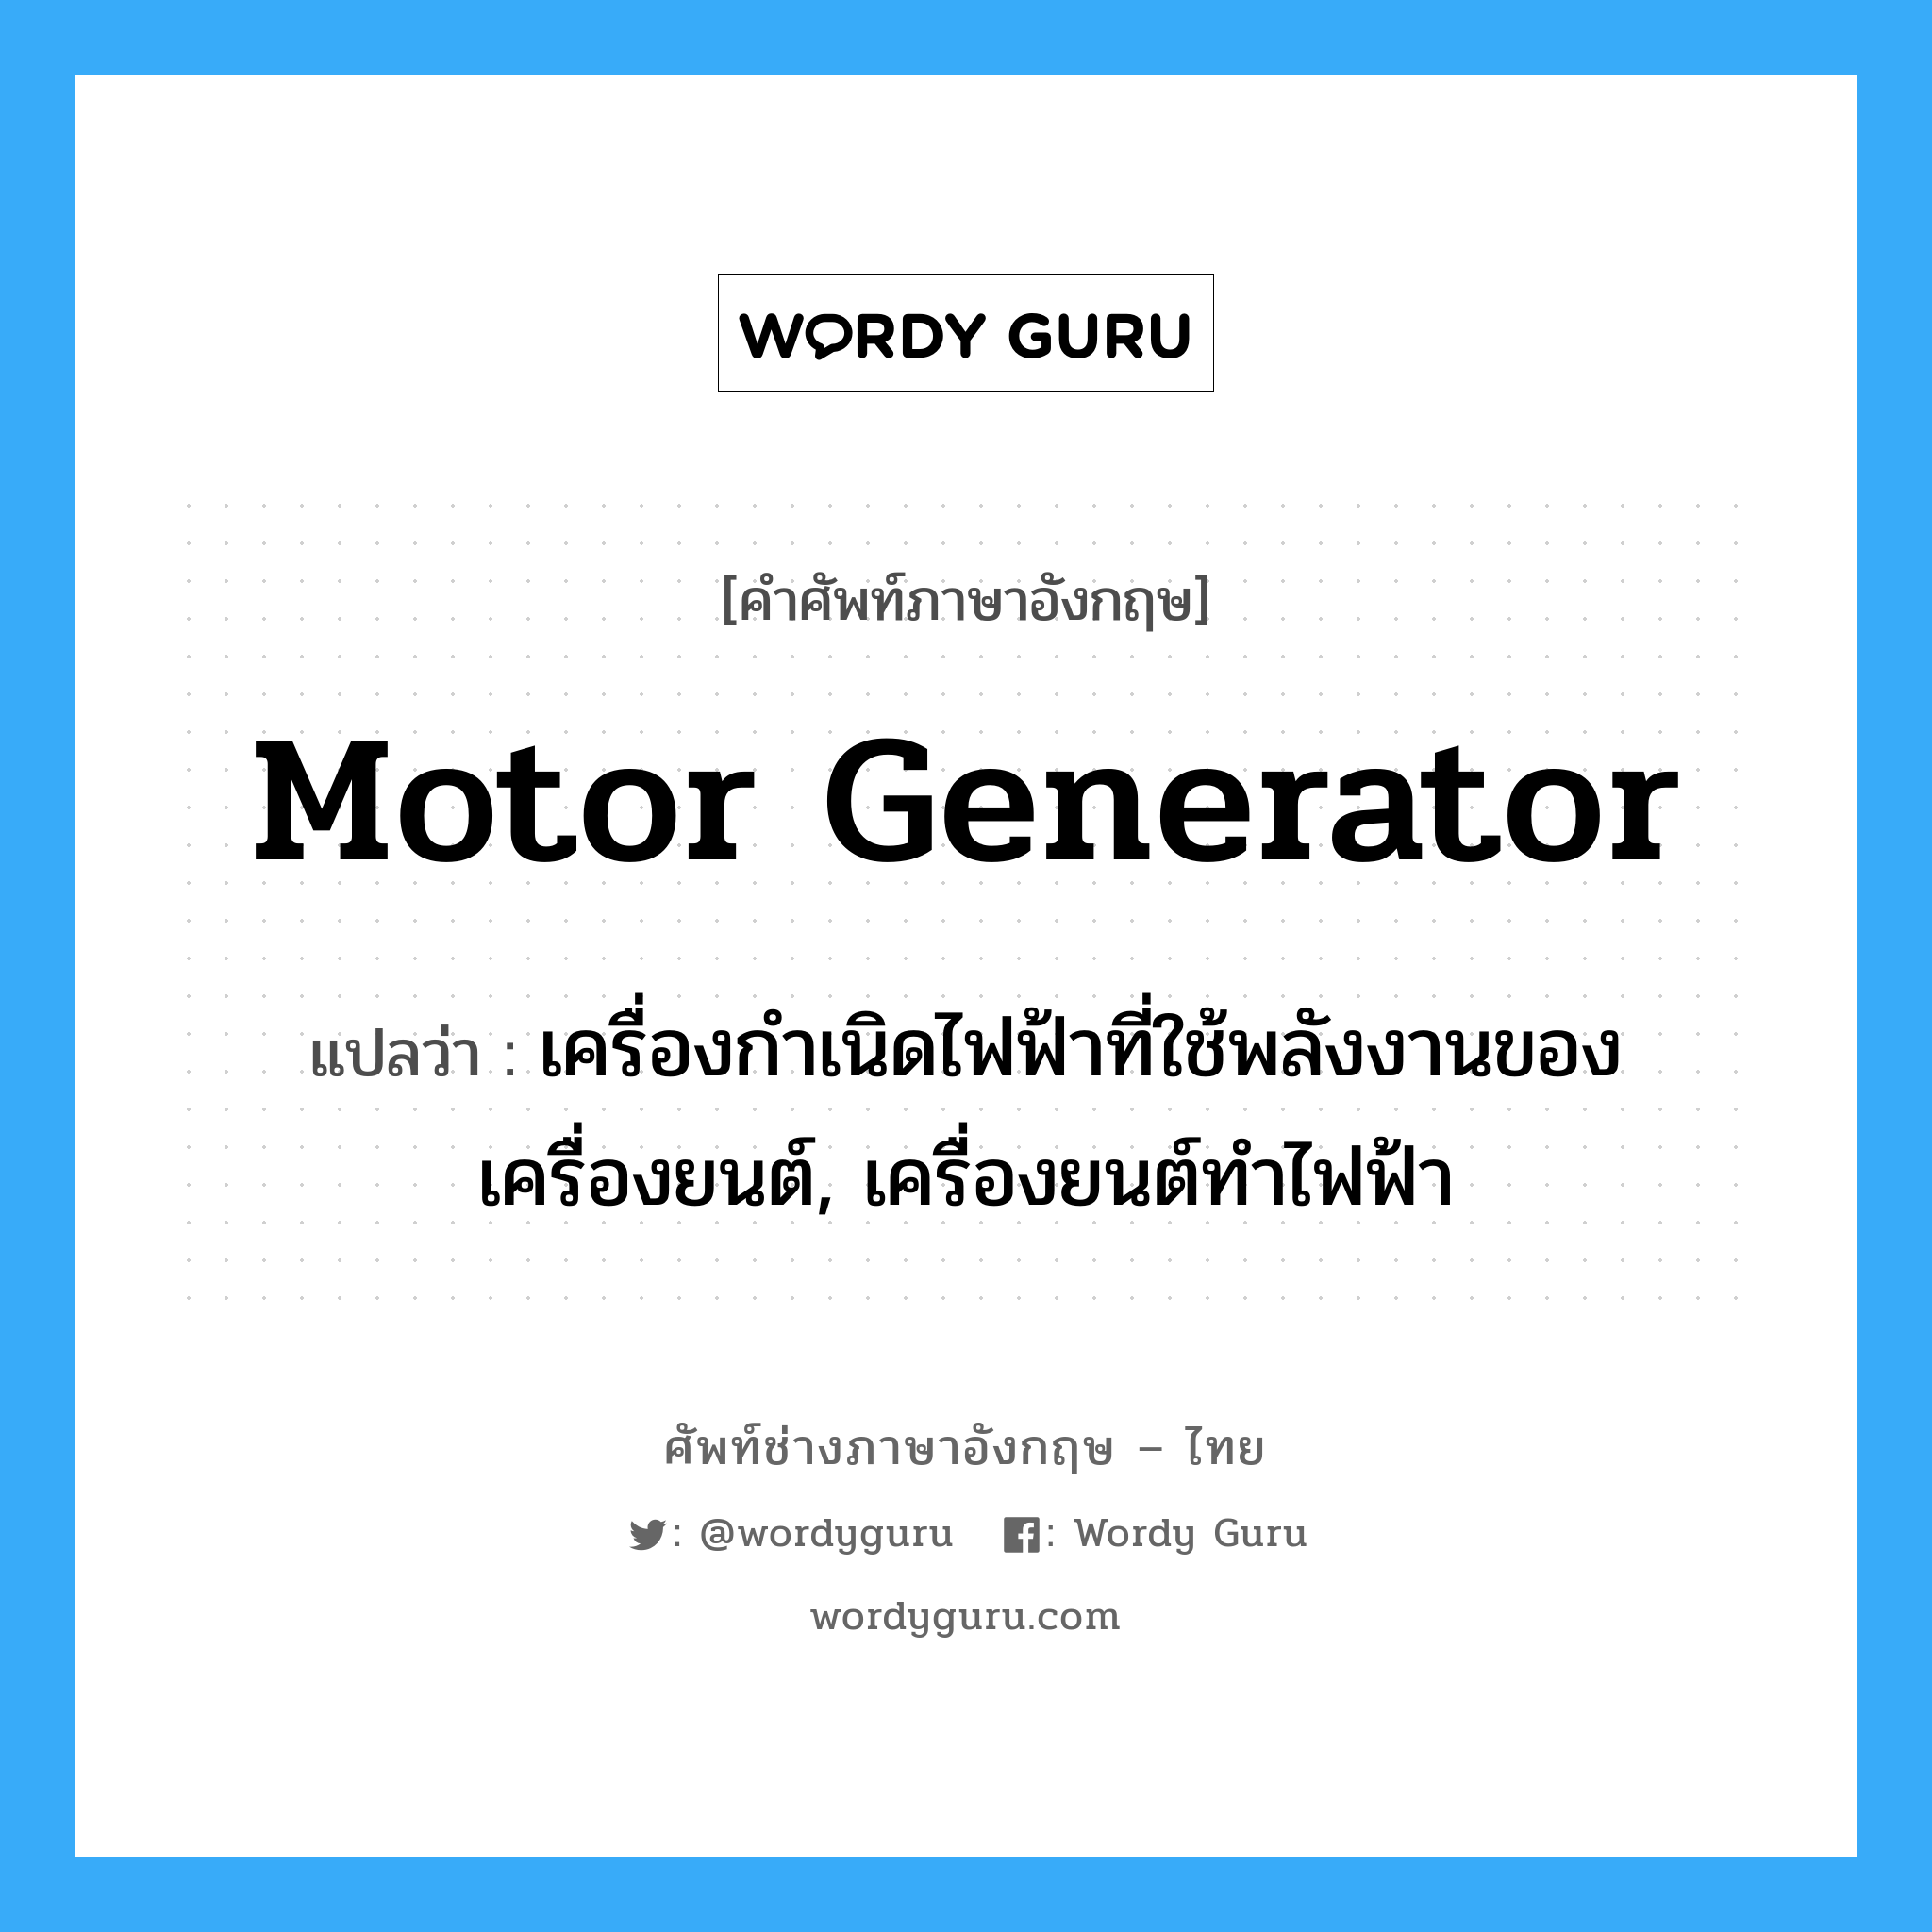 motor generator แปลว่า?, คำศัพท์ช่างภาษาอังกฤษ - ไทย motor generator คำศัพท์ภาษาอังกฤษ motor generator แปลว่า เครื่องกำเนิดไฟฟ้าที่ใช้พลังงานของเครื่องยนต์, เครื่องยนต์ทำไฟฟ้า